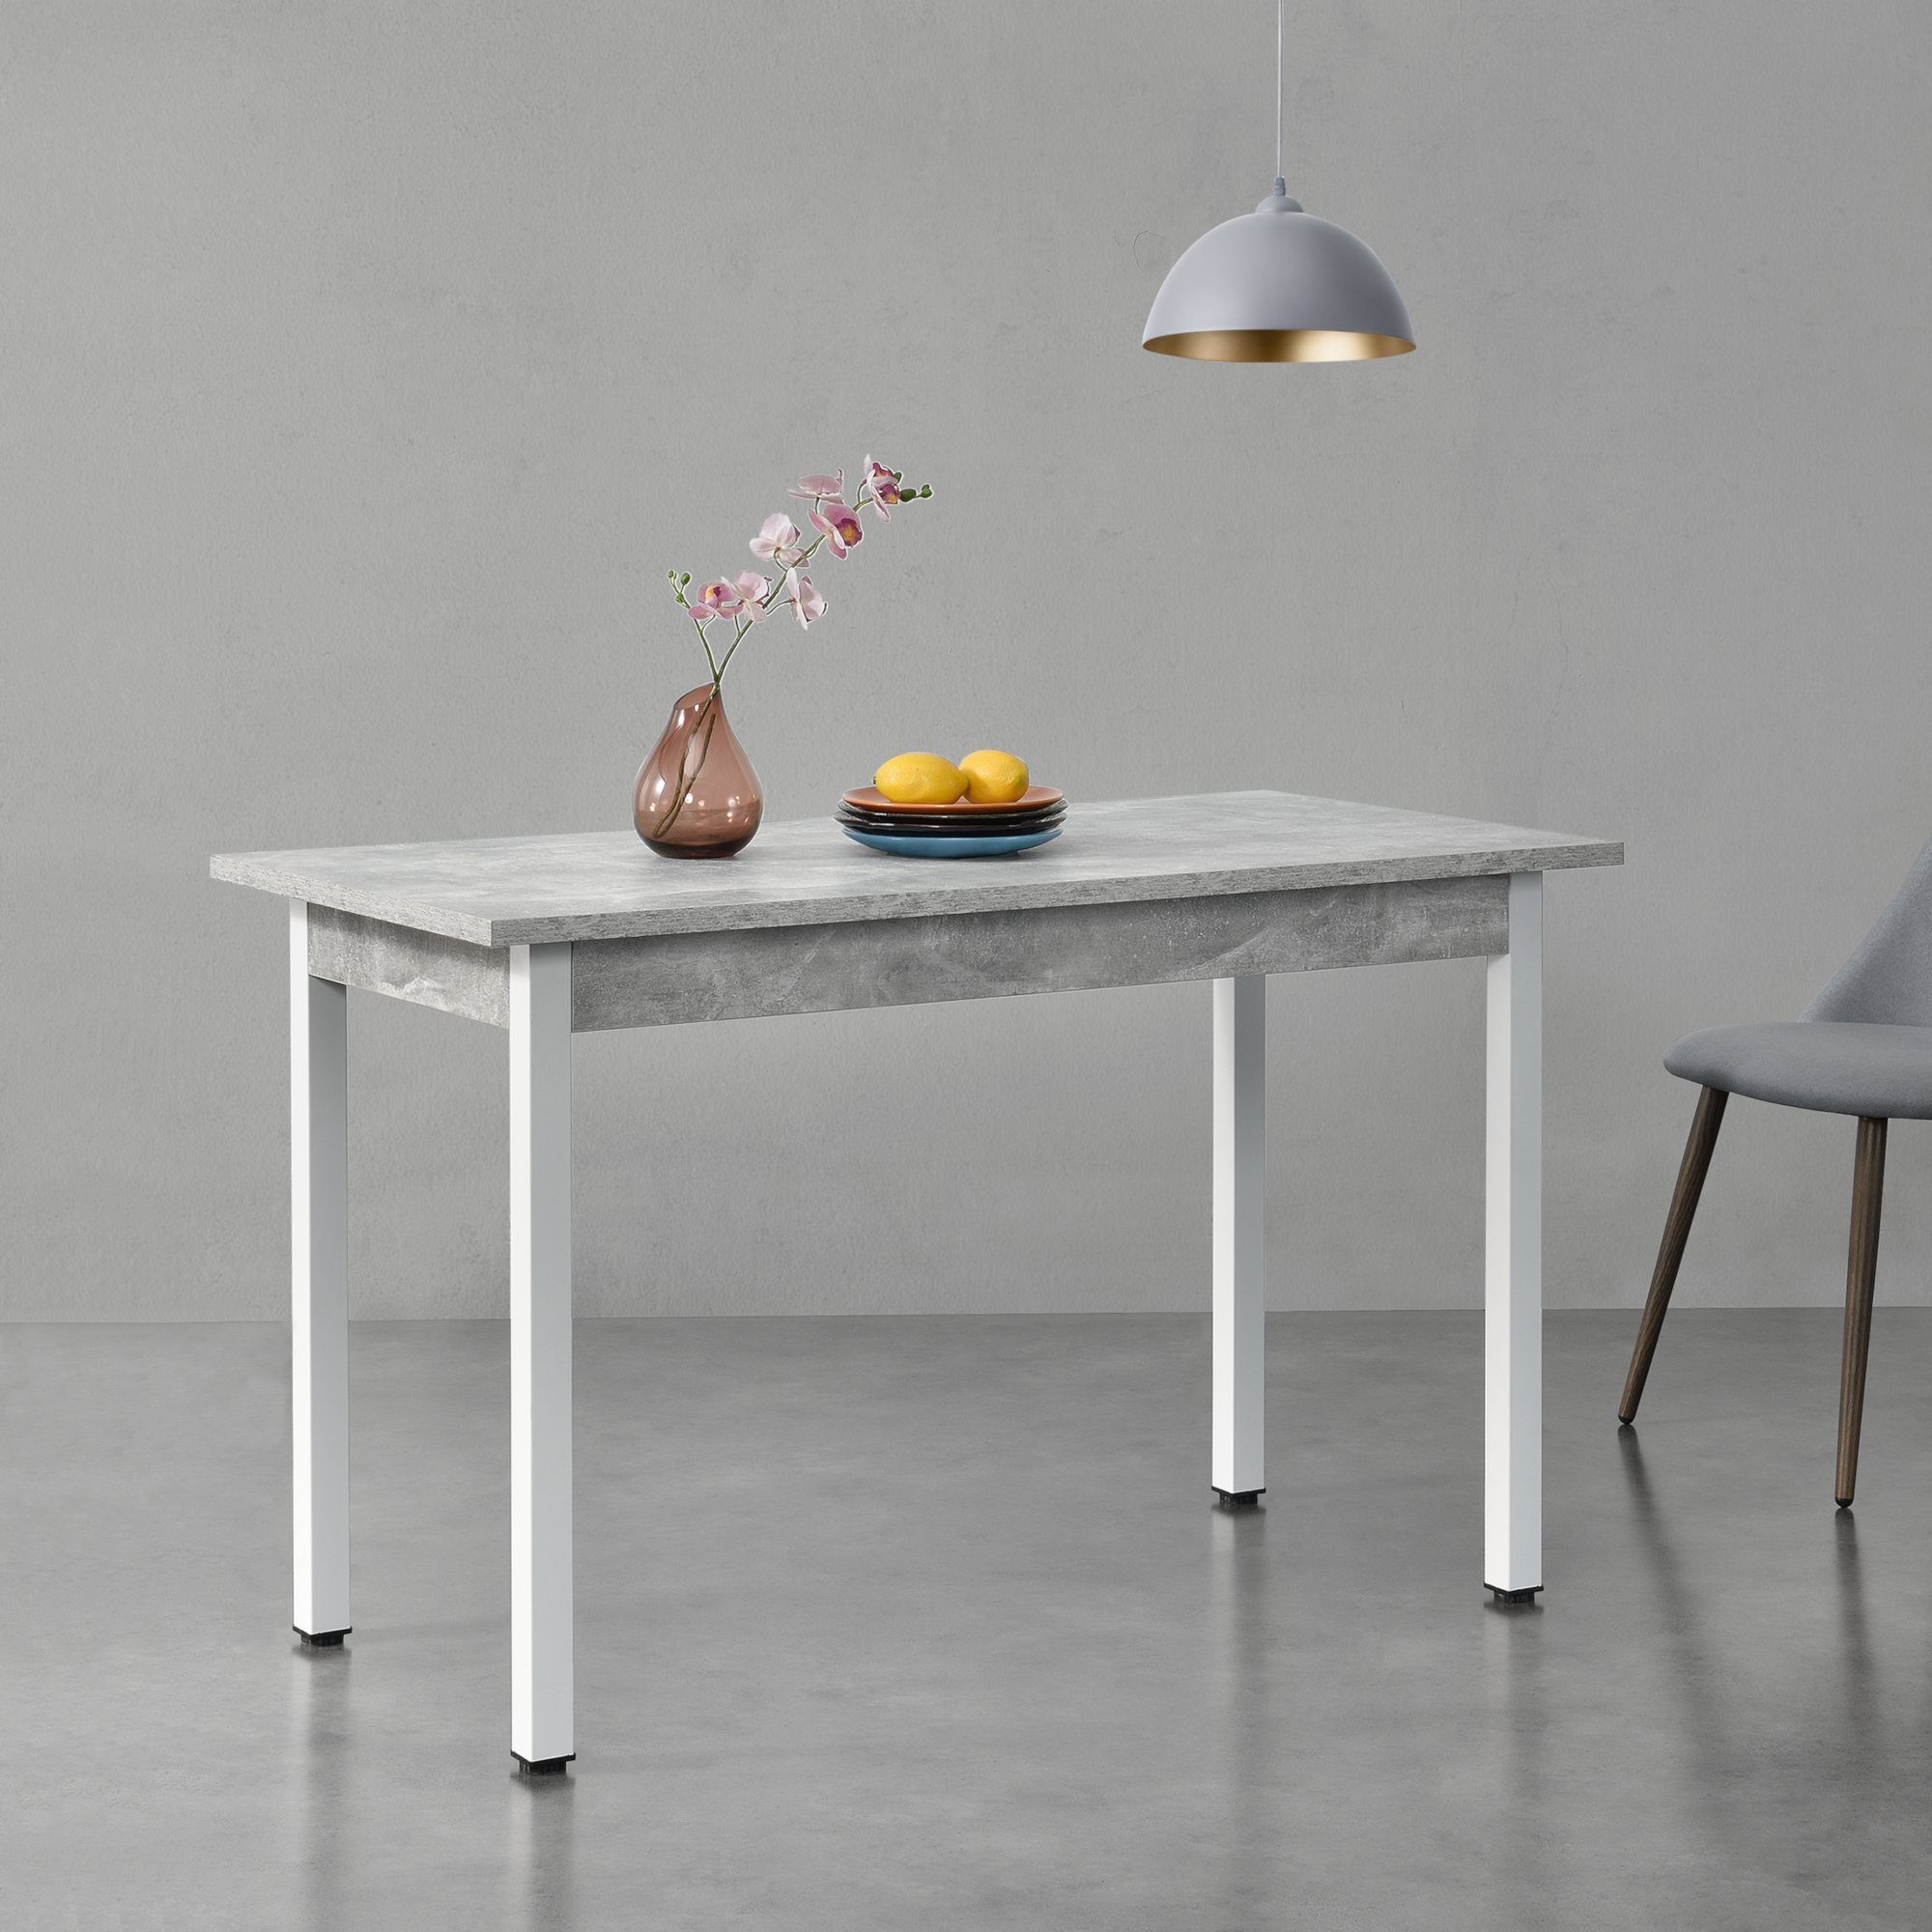 en.casa Esstisch, »Den Haag« weiß - betonfarben | 120x60cm Esszimmertisch | Betonoptik Weiß betonfarben / Küchentisch weiß